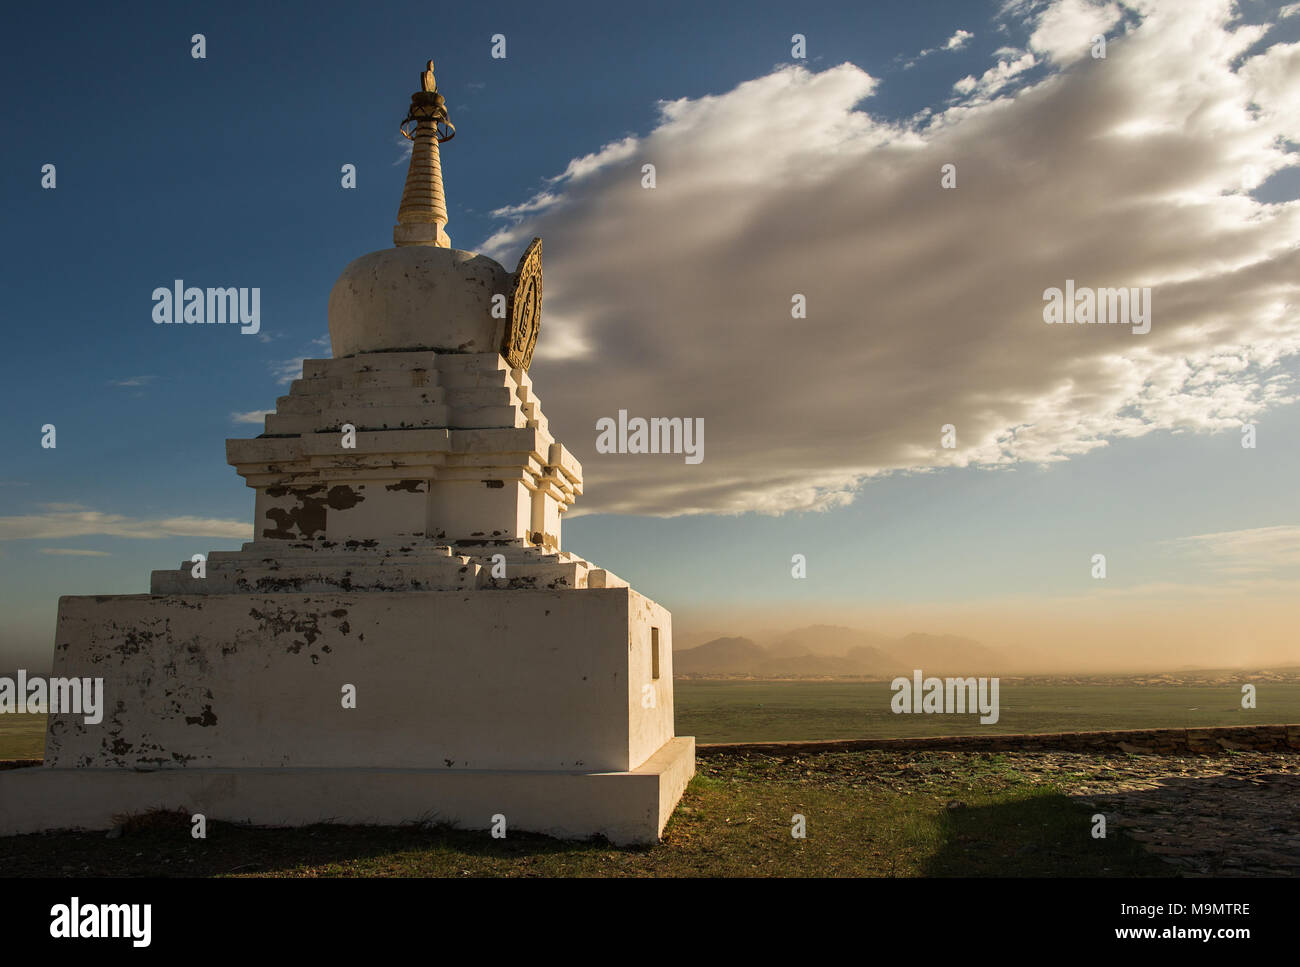 Sanctuaire bouddhiste, sandstorm et spectaculaire nuage dans le dos, désert de Gobi, Mongolie Banque D'Images